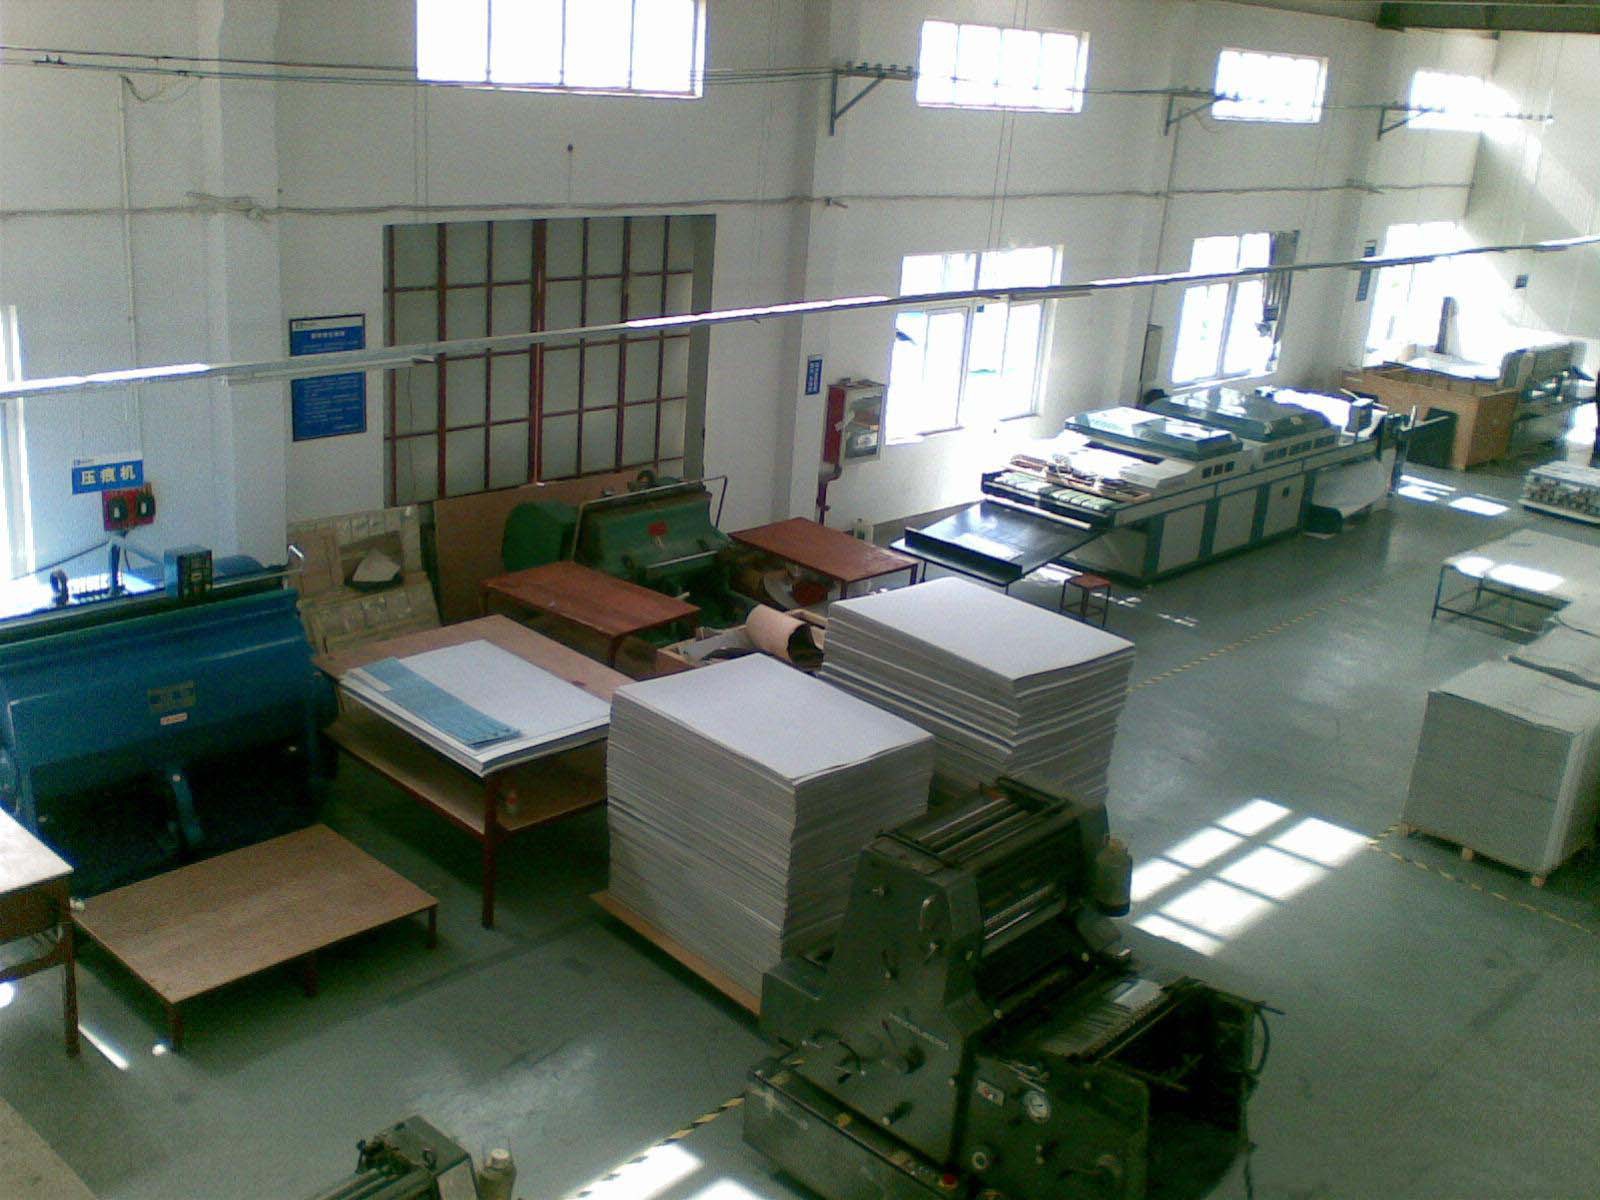 包装制品印刷|惠州市彩浪印刷包装制品有限公司招聘信息